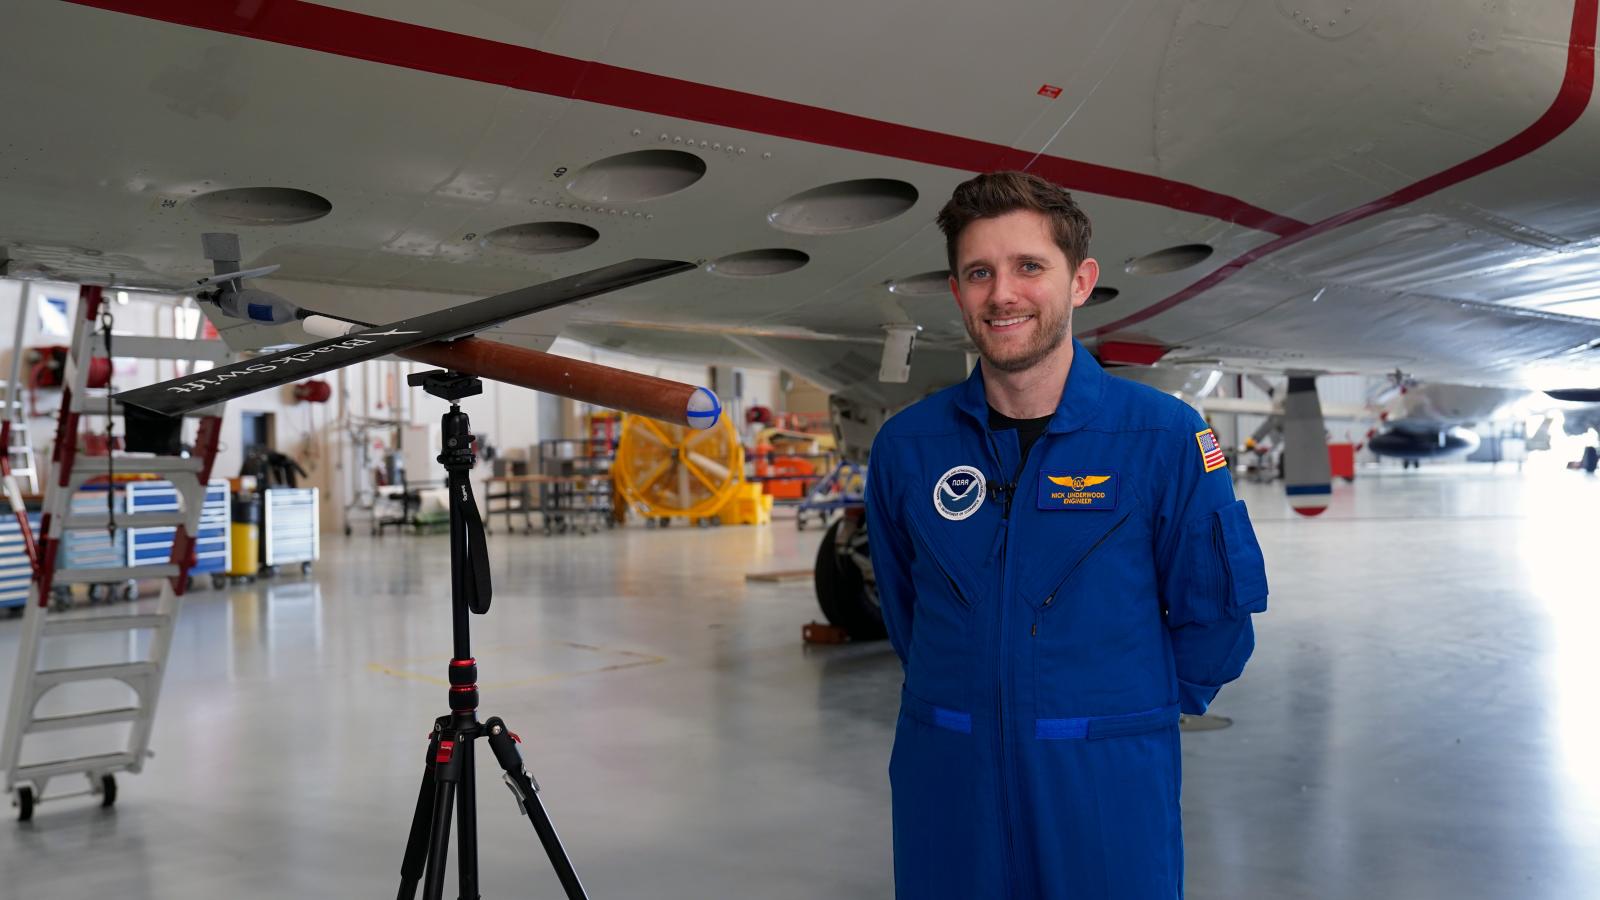 NOAA Programs and Integration Engineer Nick Underwood in his flight suit